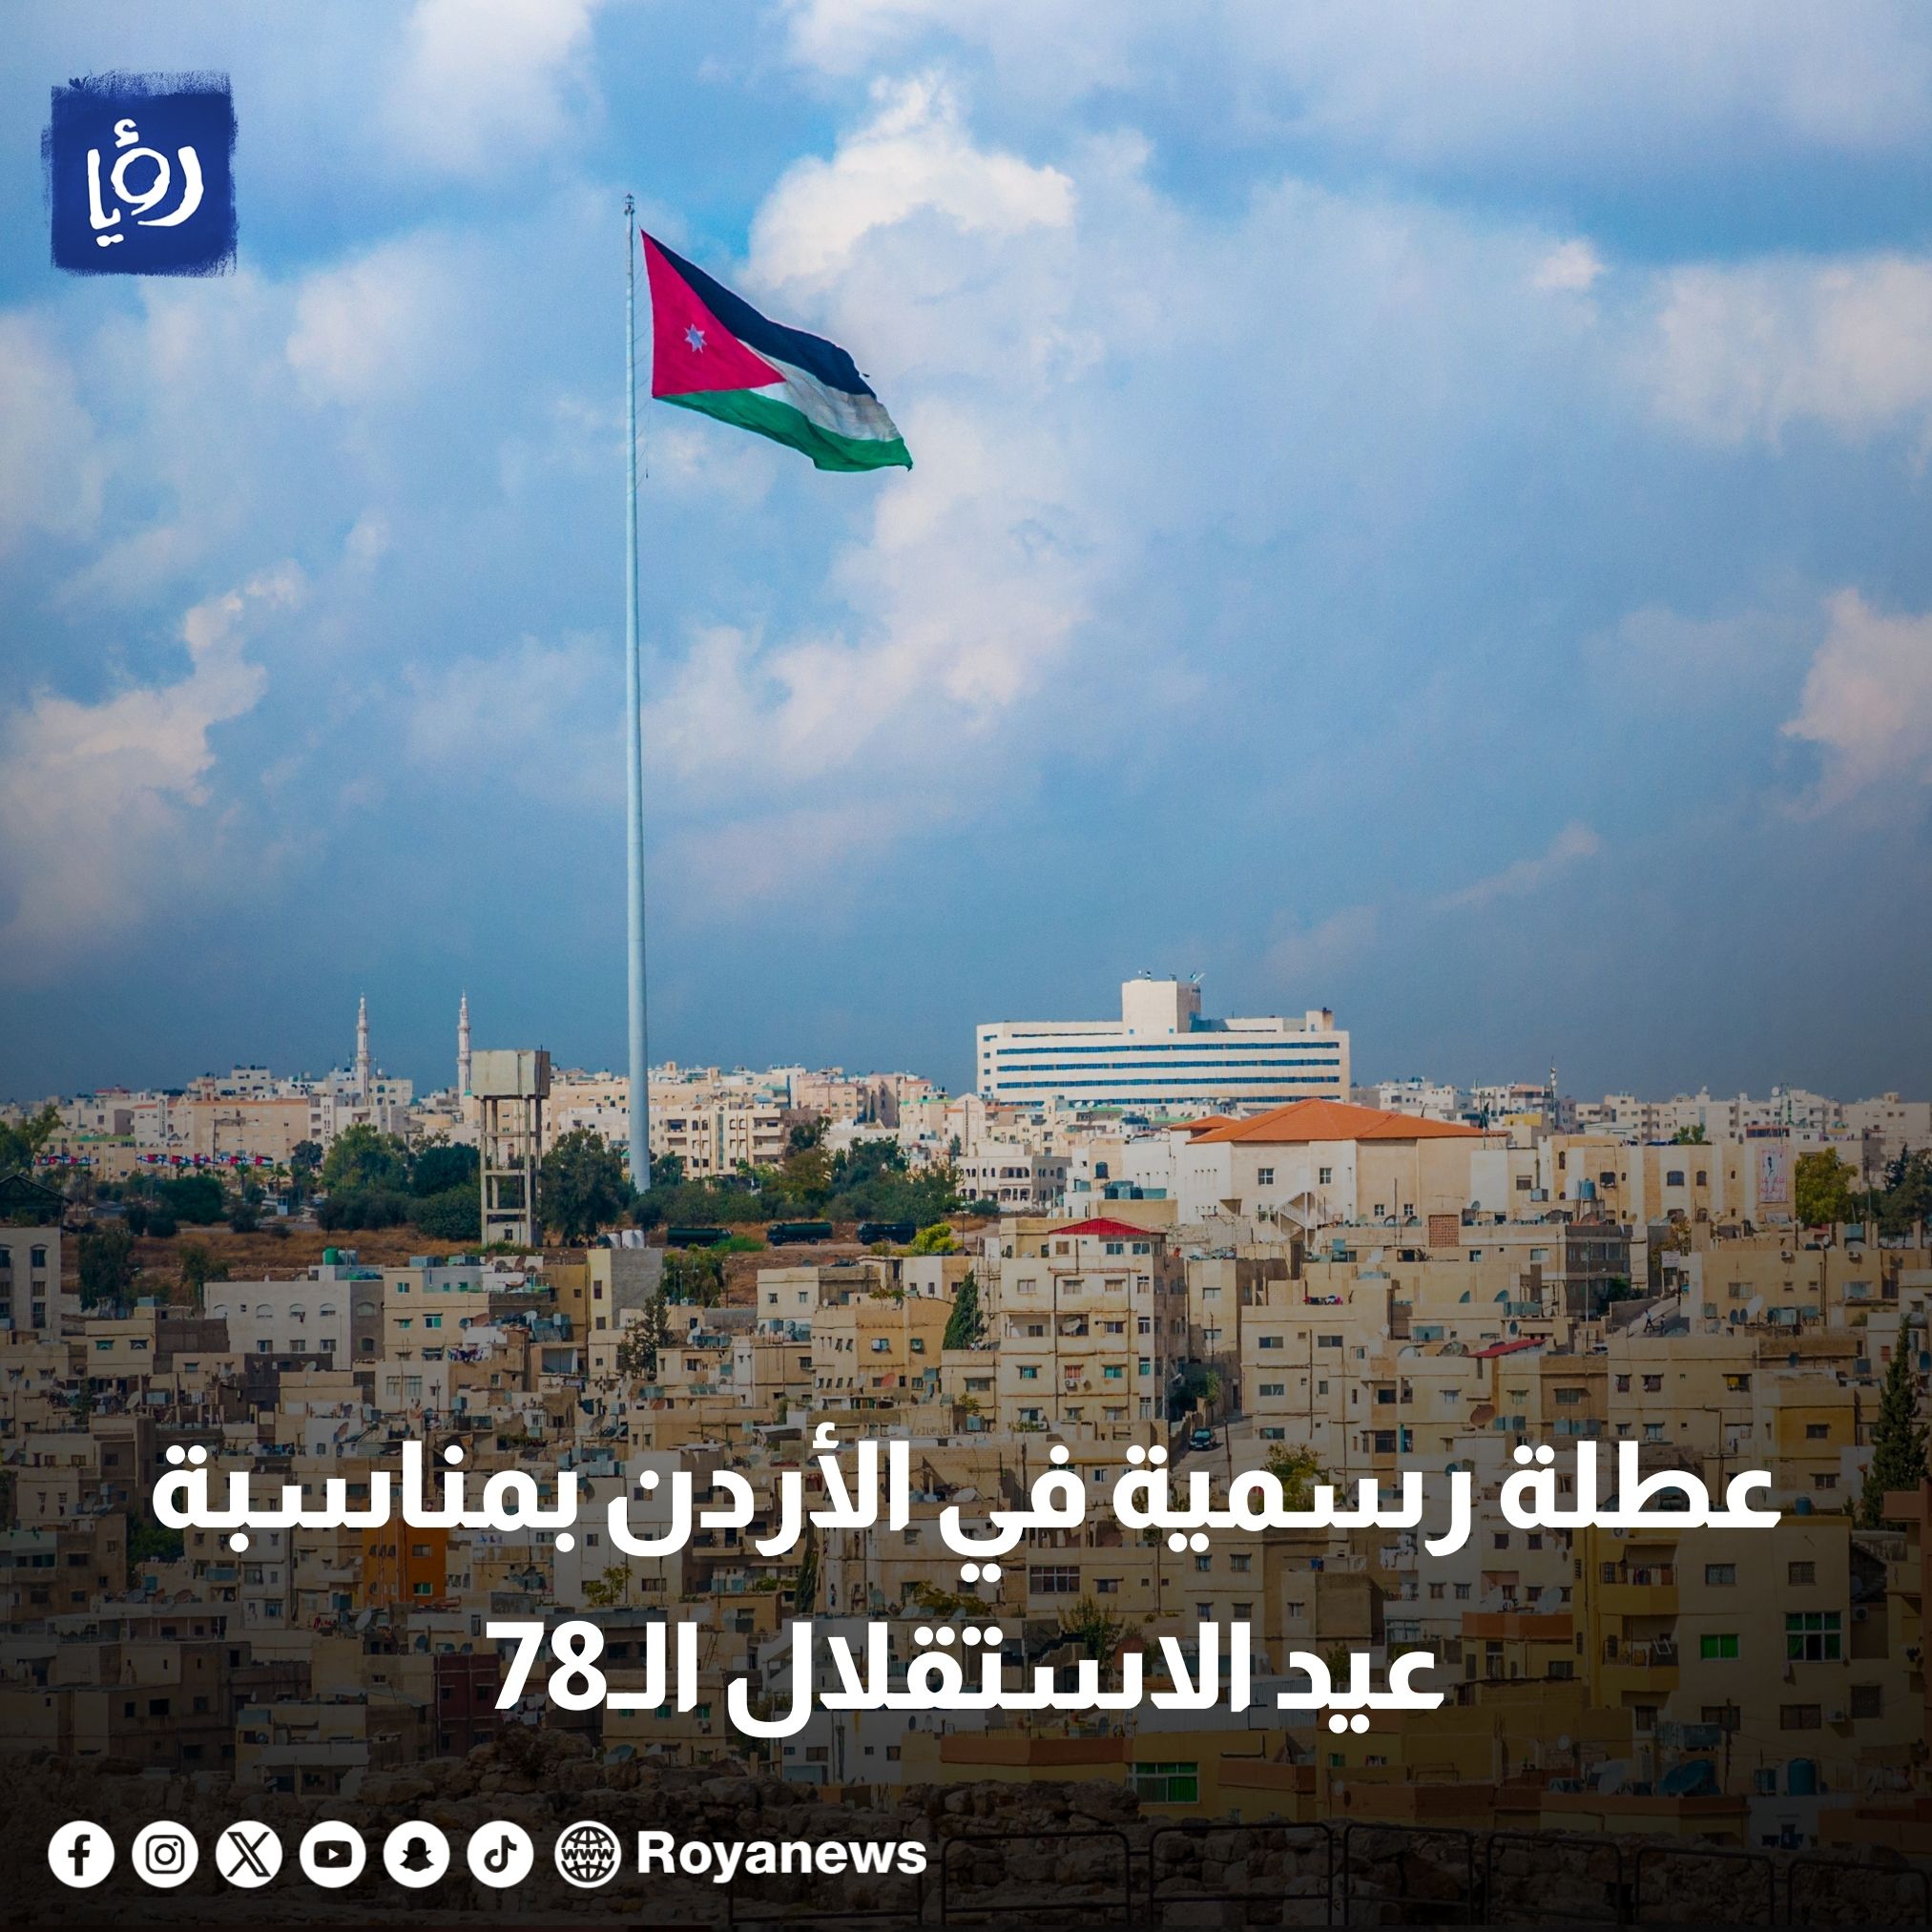 عطلة رسمية في الأردن بمناسبة عيد الاستقلال ال78 #رؤيا_الإخباري 